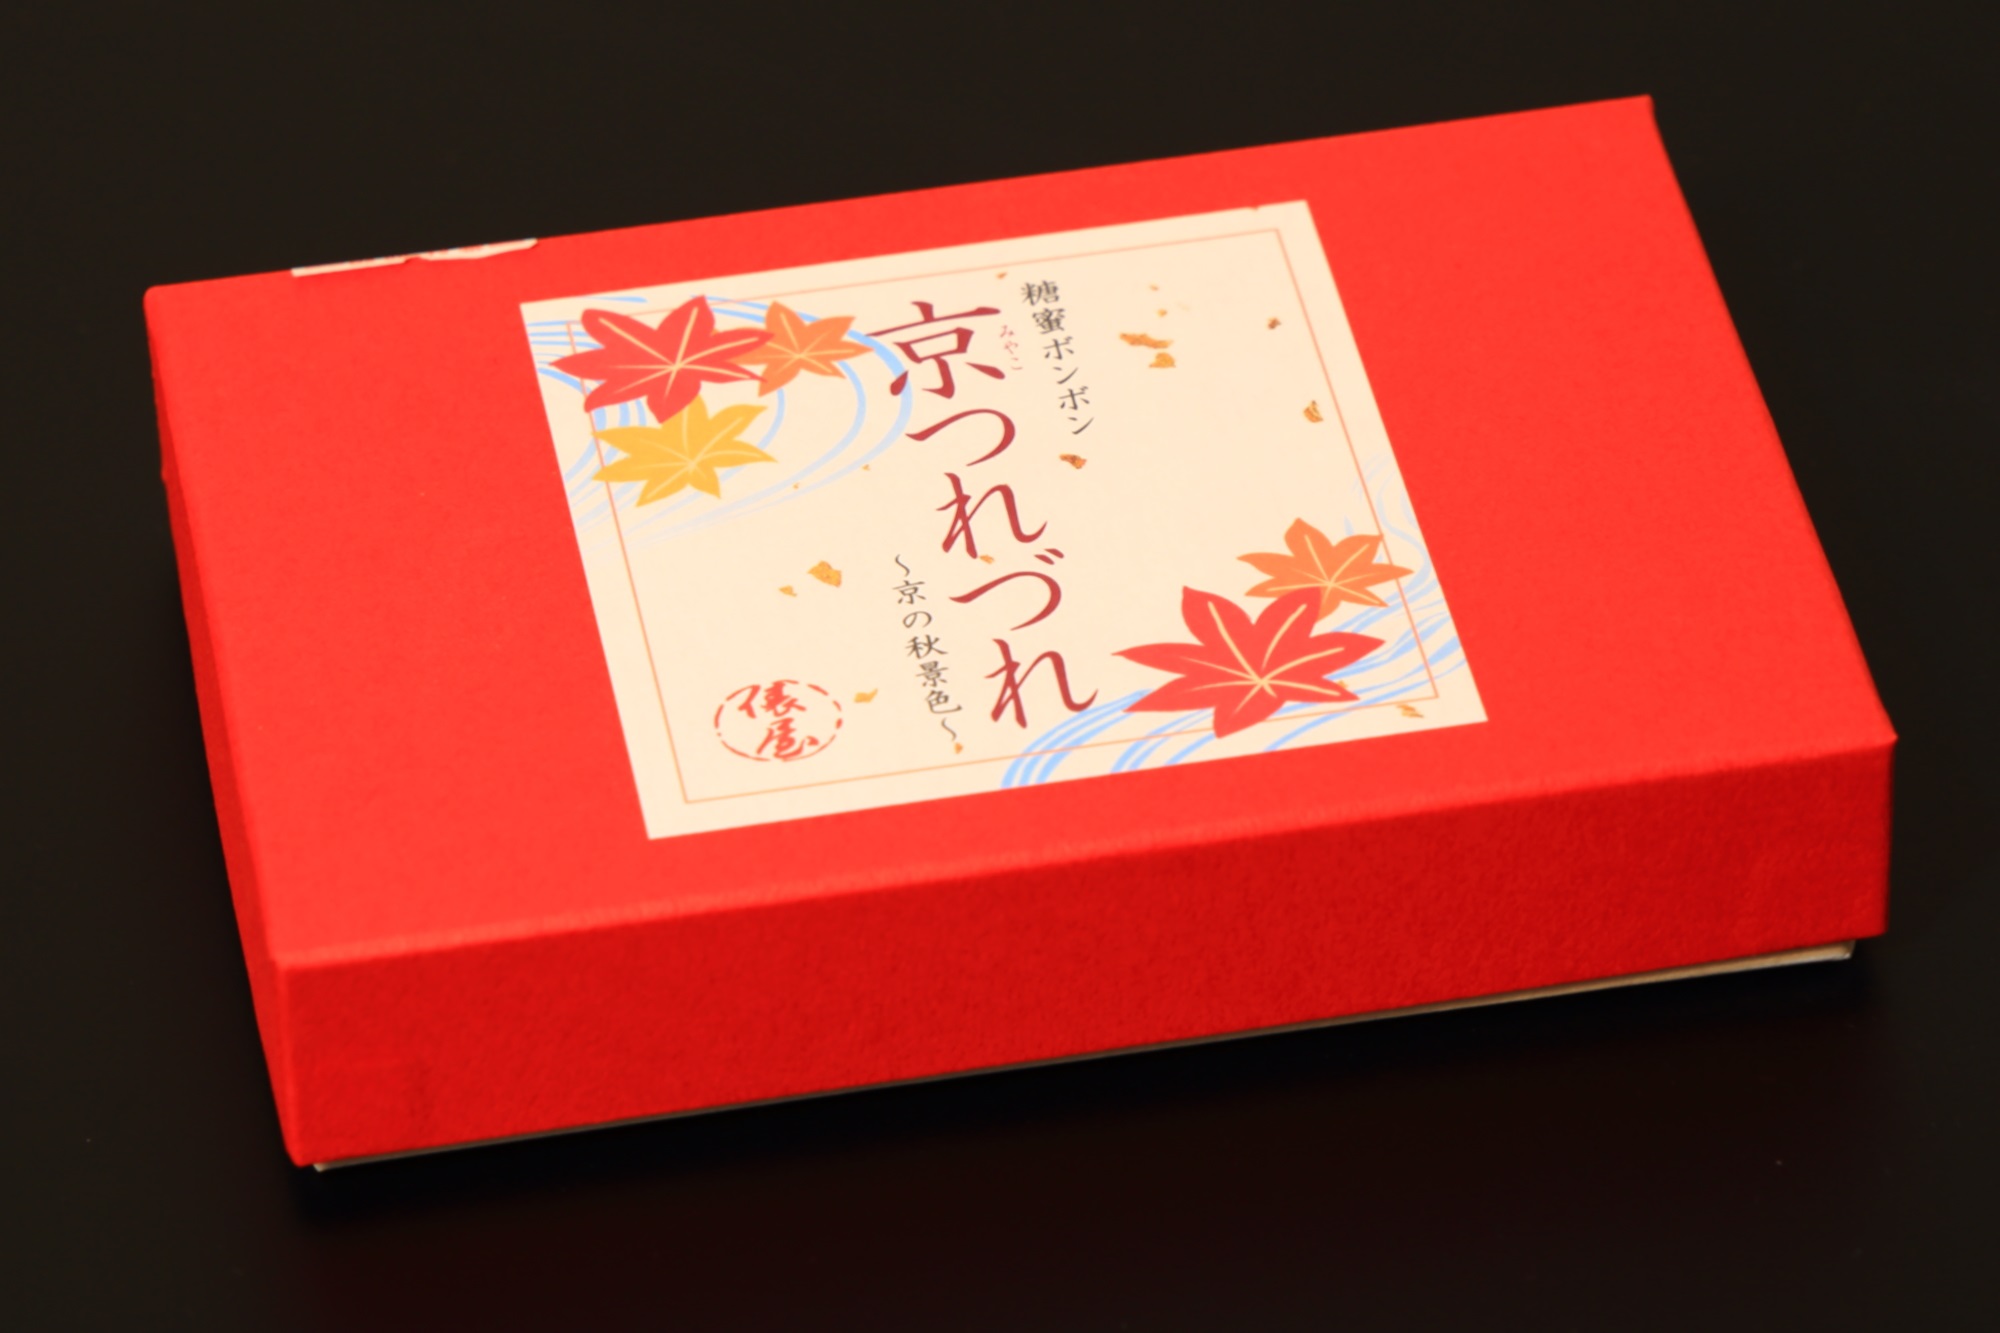 俵屋吉富 祇園店の季節限定和菓子の糖蜜ボンボン 京つれづれの外箱